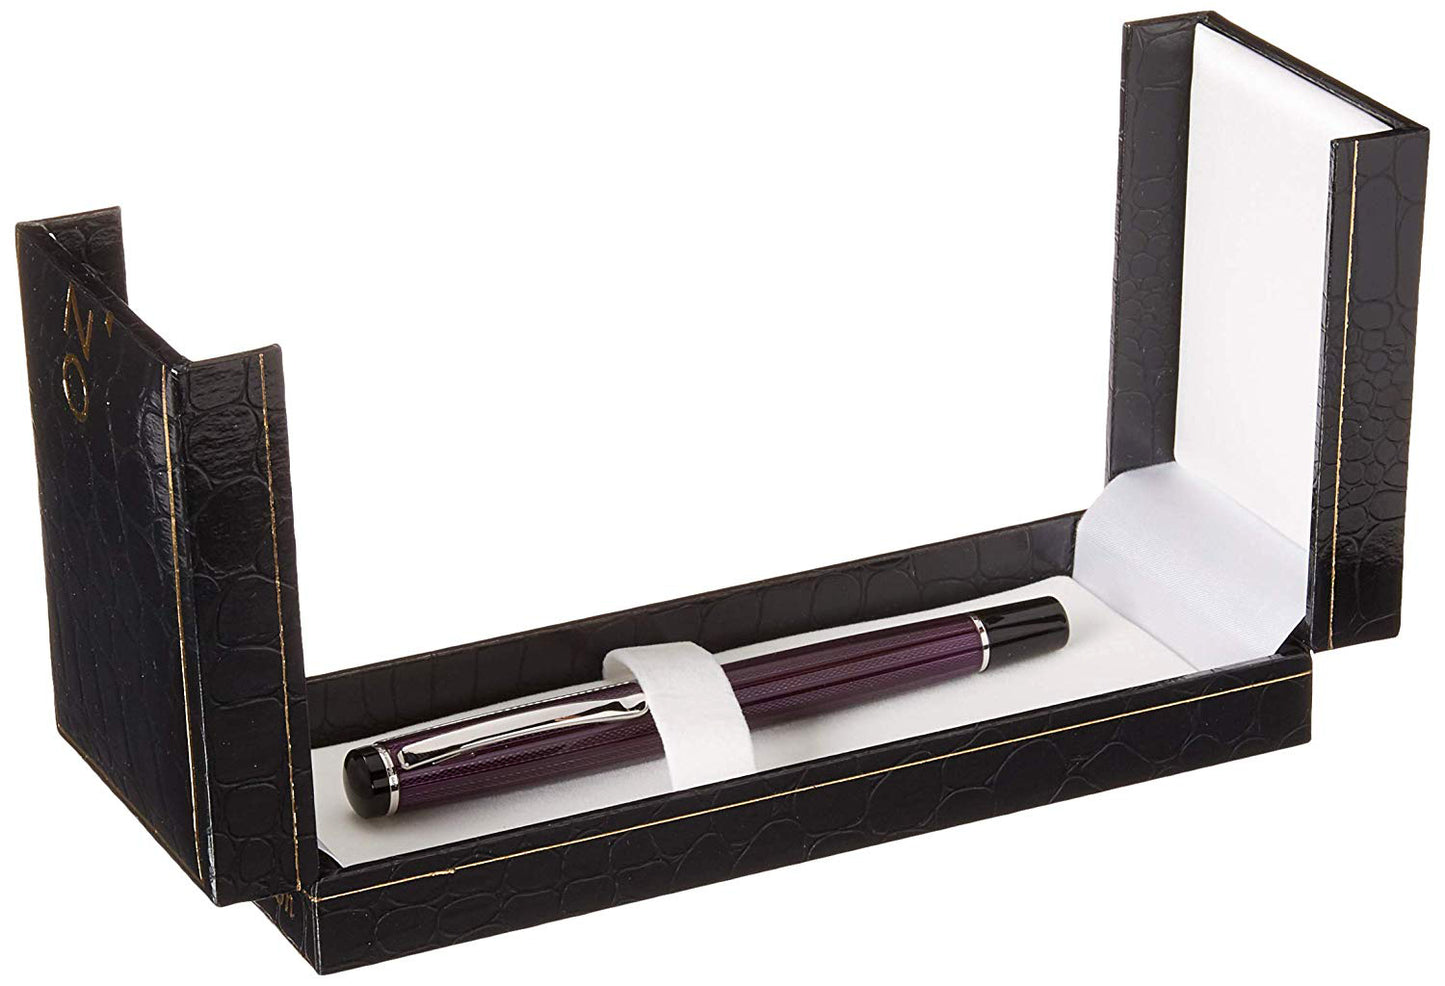 Xezo - Incognito Purple F fountain pen in an open black gift box